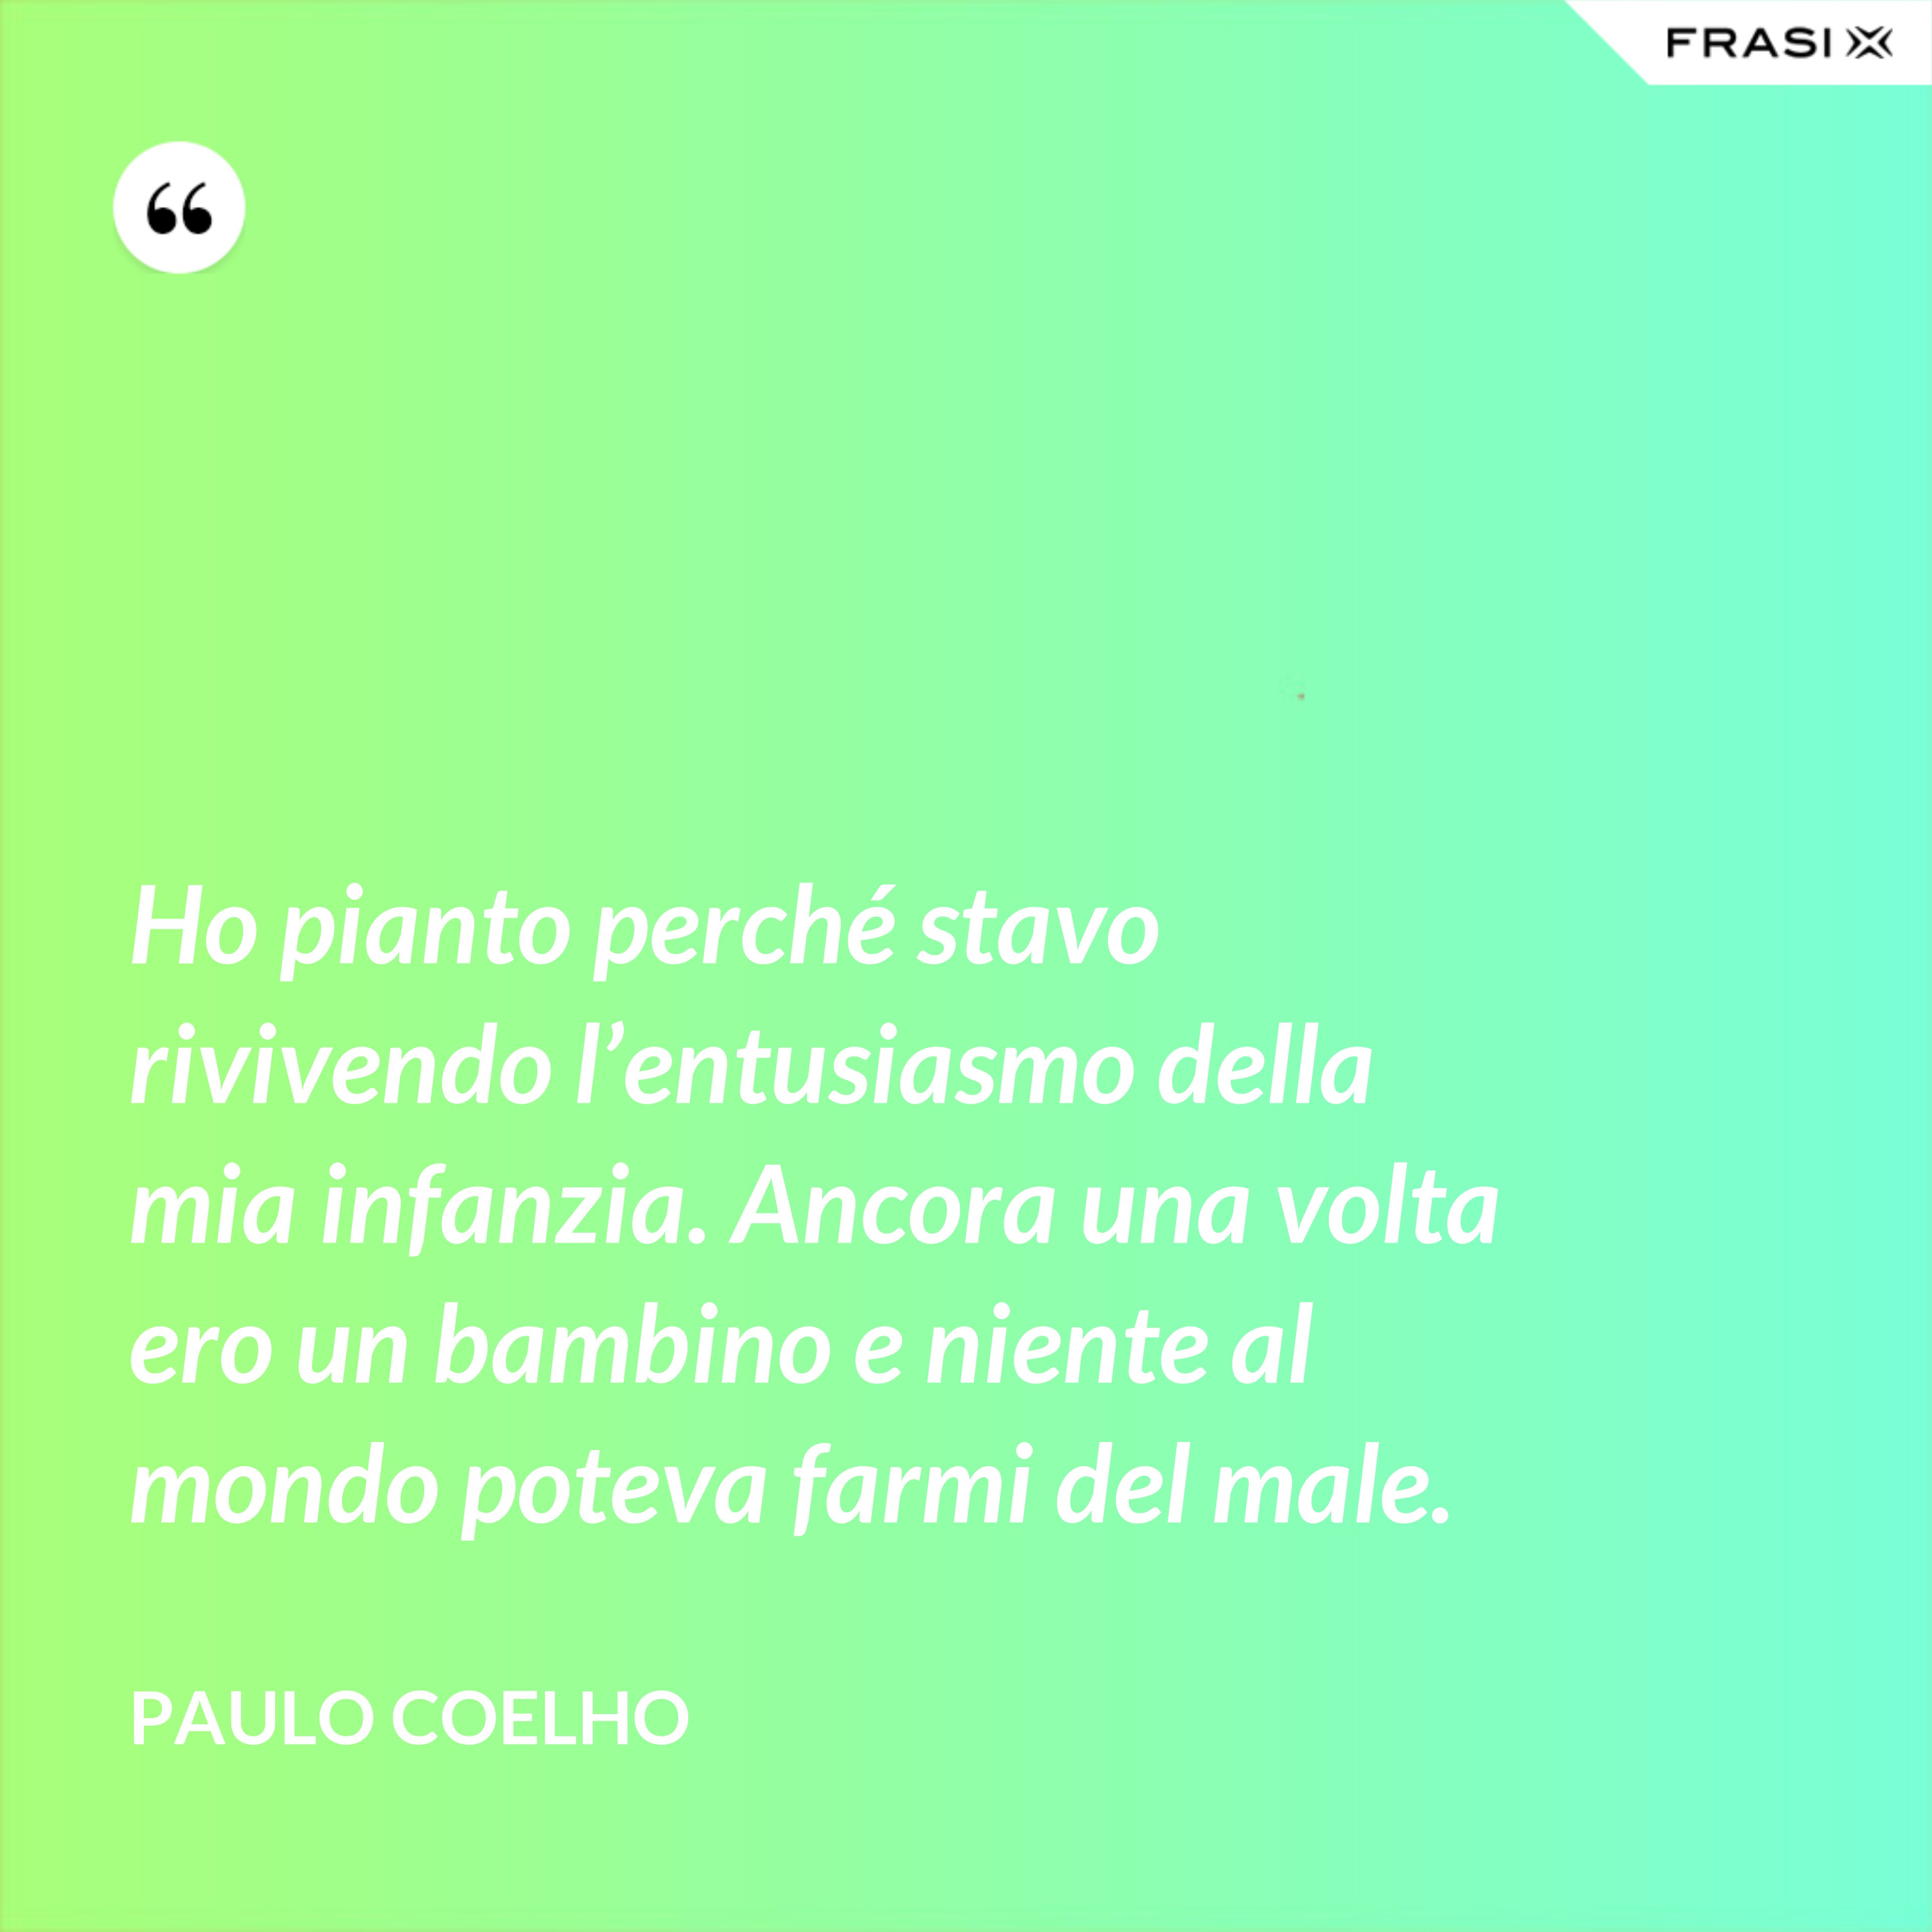 Ho pianto perché stavo rivivendo l’entusiasmo della mia infanzia. Ancora una volta ero un bambino e niente al mondo poteva farmi del male. - Paulo Coelho